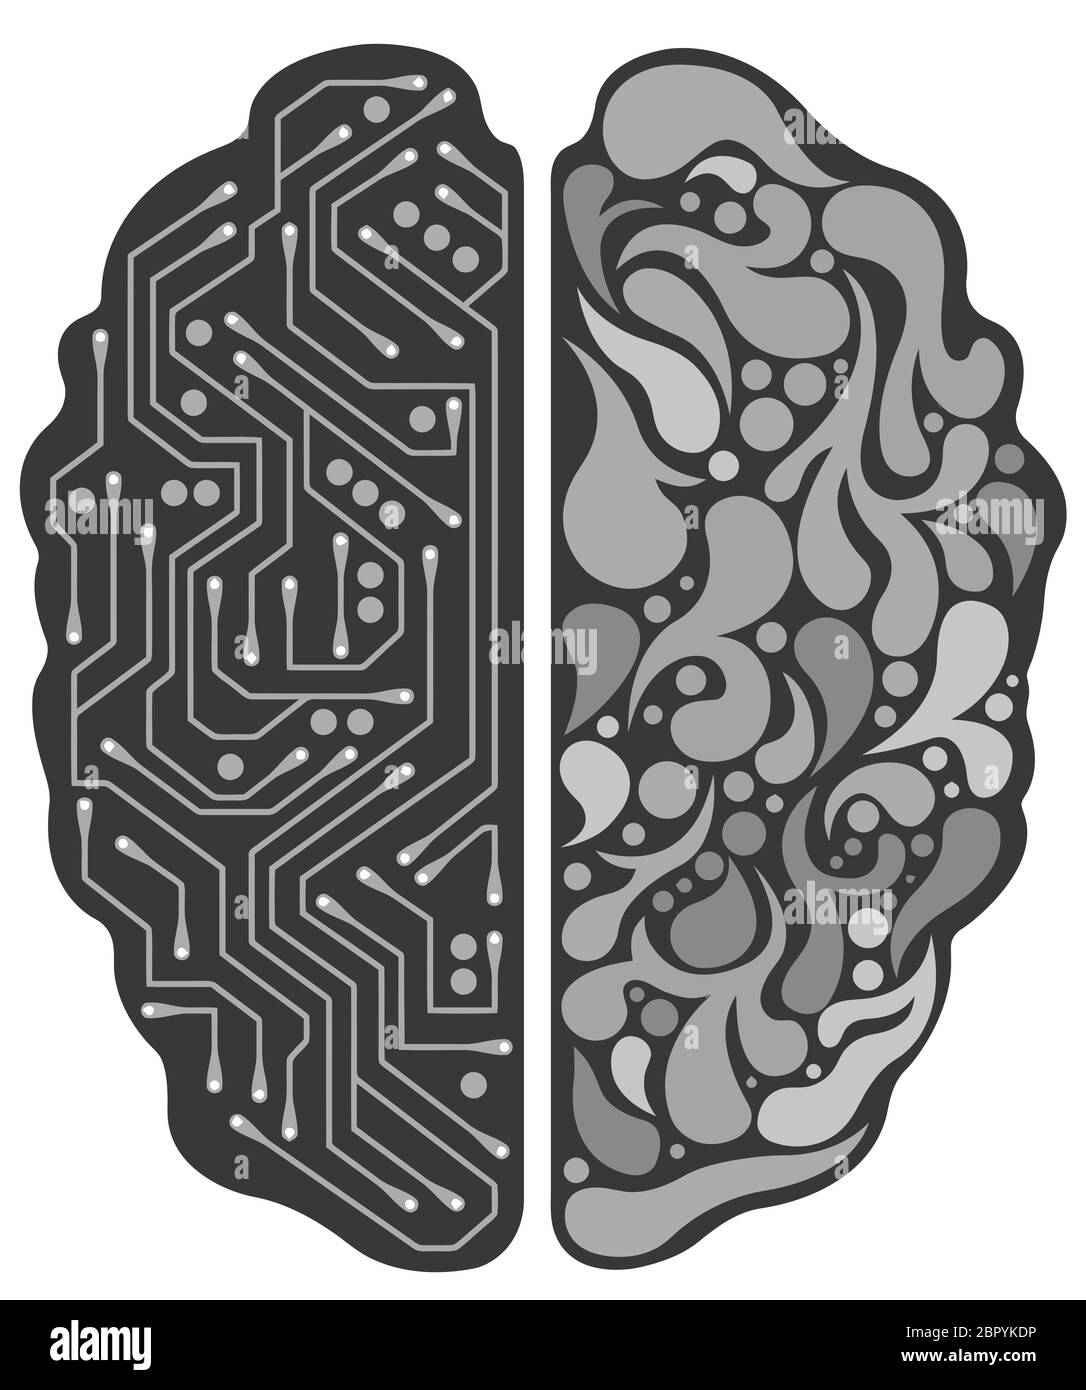 L'esprit de la moitié du cerveau artificiel ordinateur tech cyborg noir blanc illustration Banque D'Images